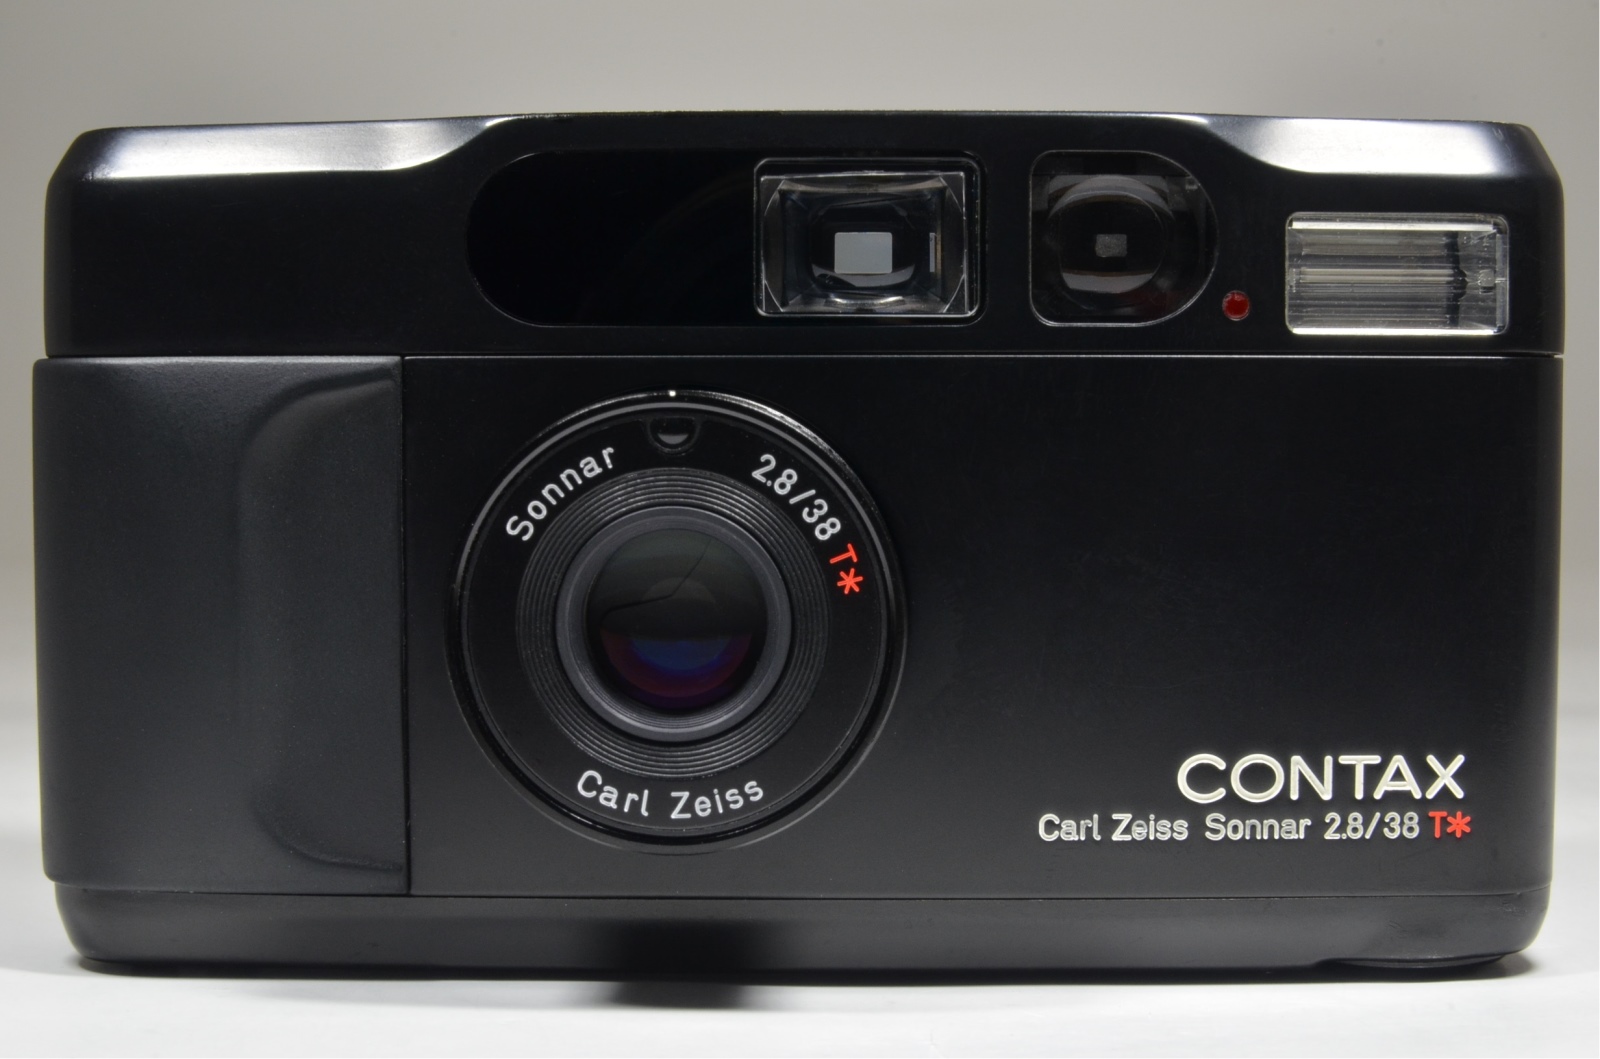 Contax t2 喜喜さん専用 フィルムカメラ カメラ 家電・スマホ・カメラ 人気の新製品